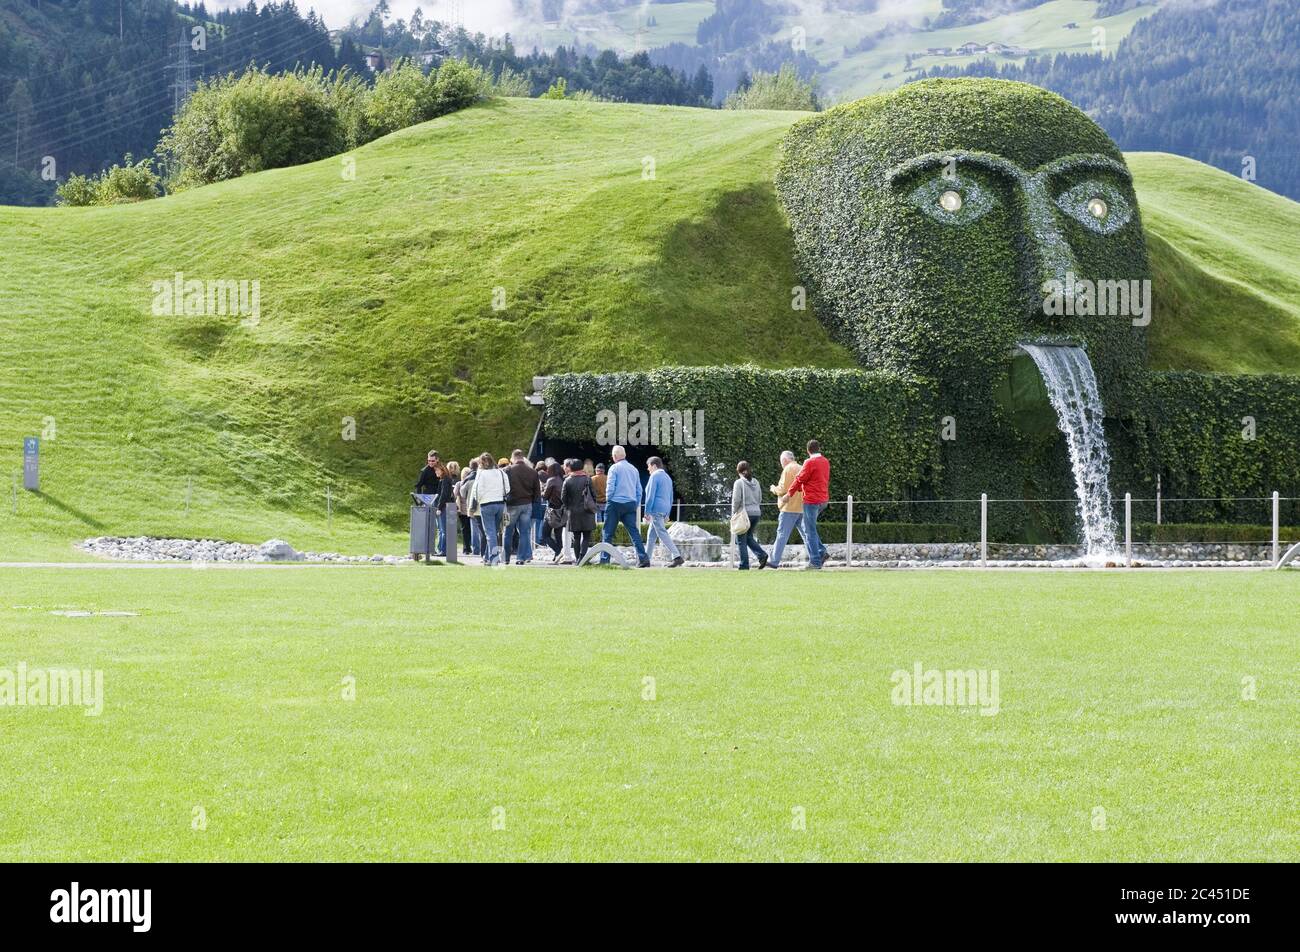 Opgewonden zijn schade lexicon Swarovski Kristallwelten, Wattens, Austria Stock Photo - Alamy